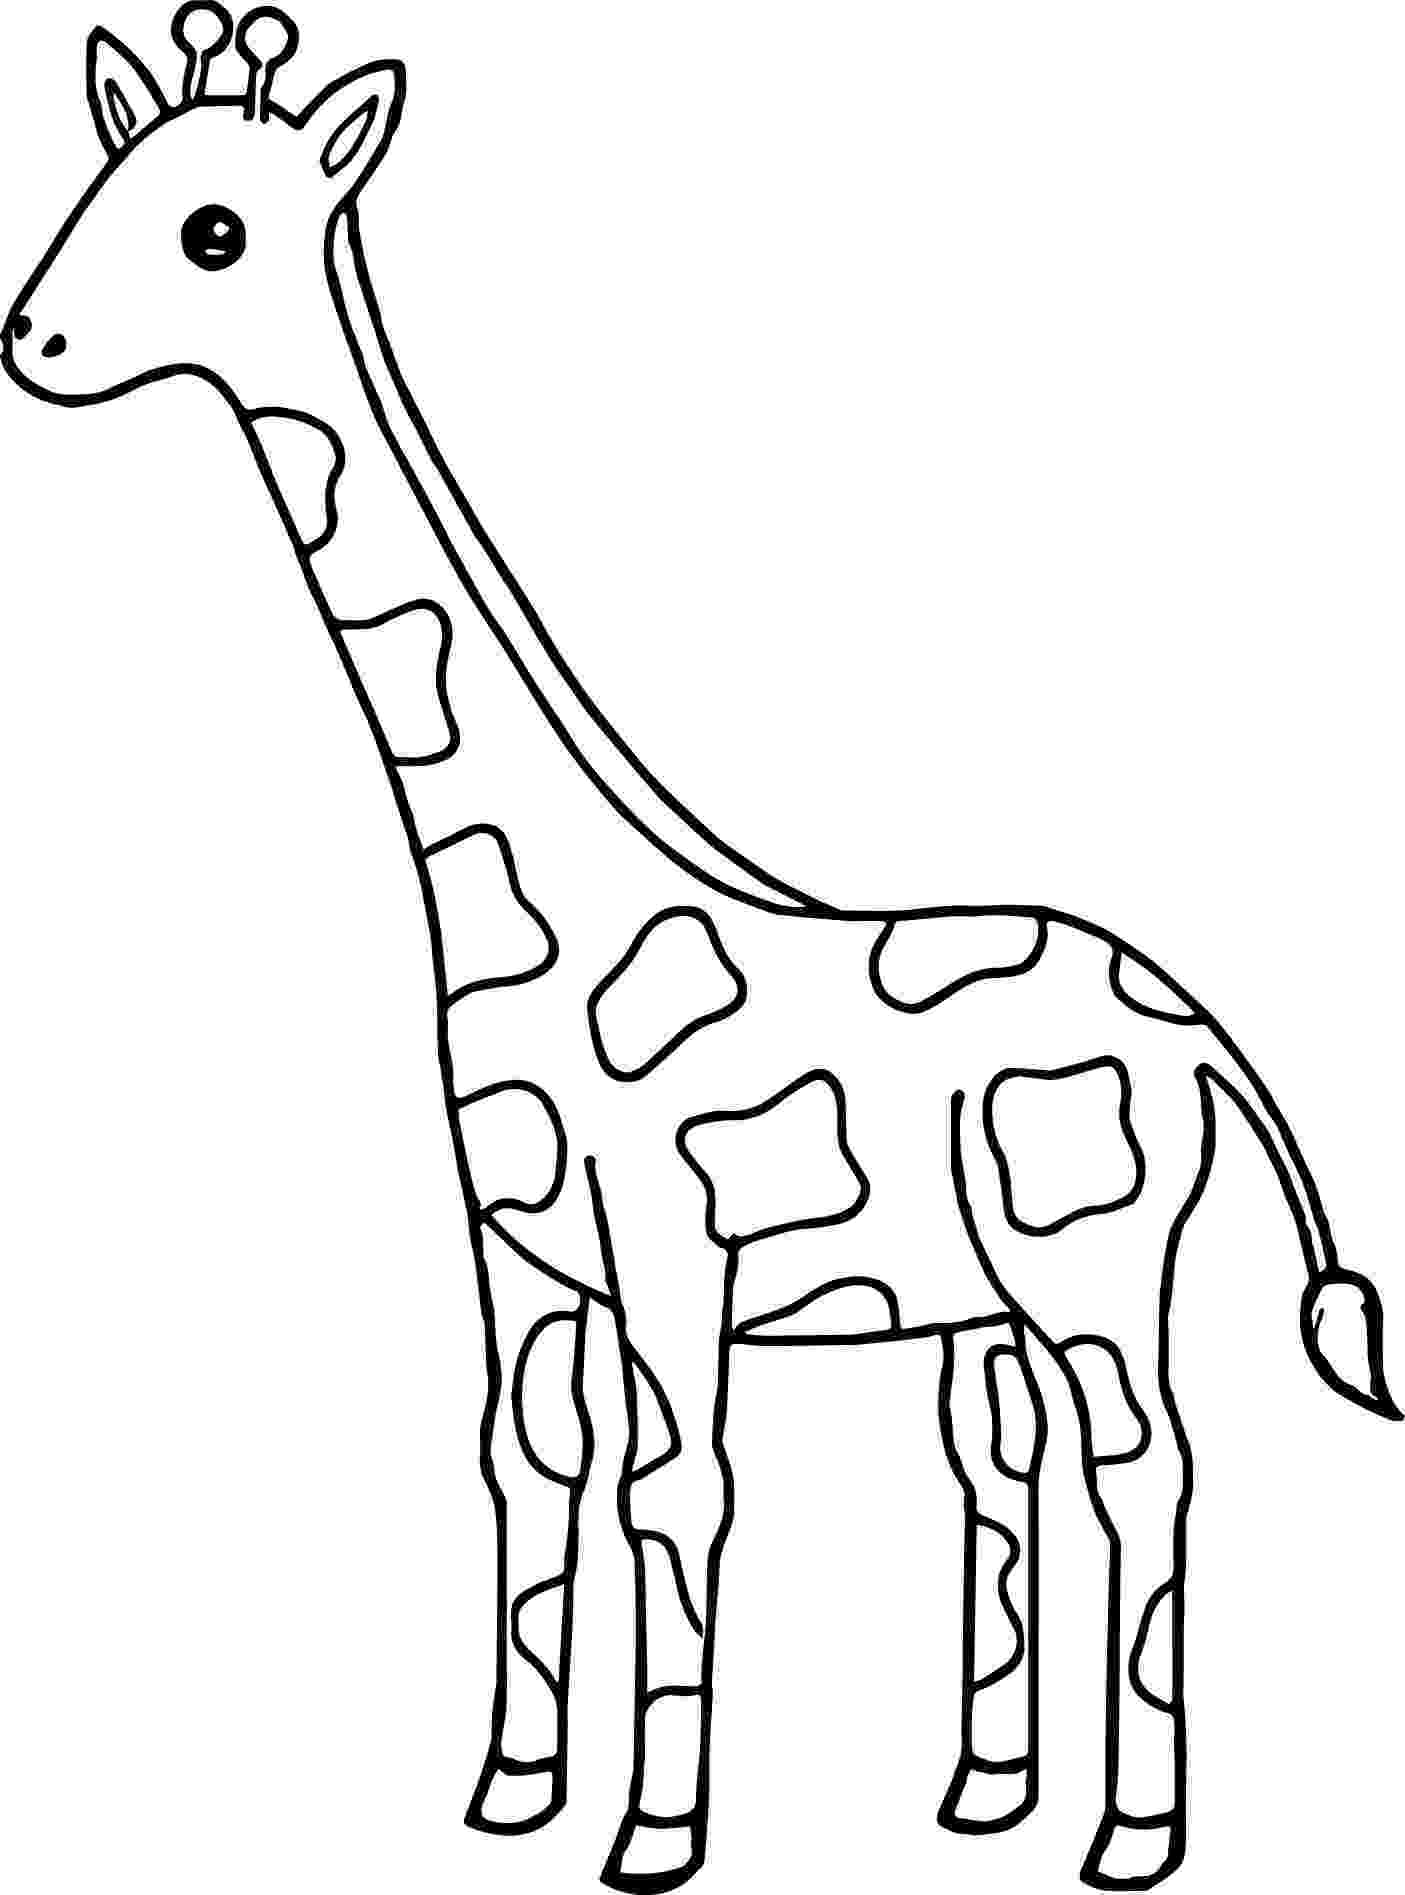 colouring sheet giraffe kids n funcom 45 coloring pages of giraffe giraffe sheet colouring 